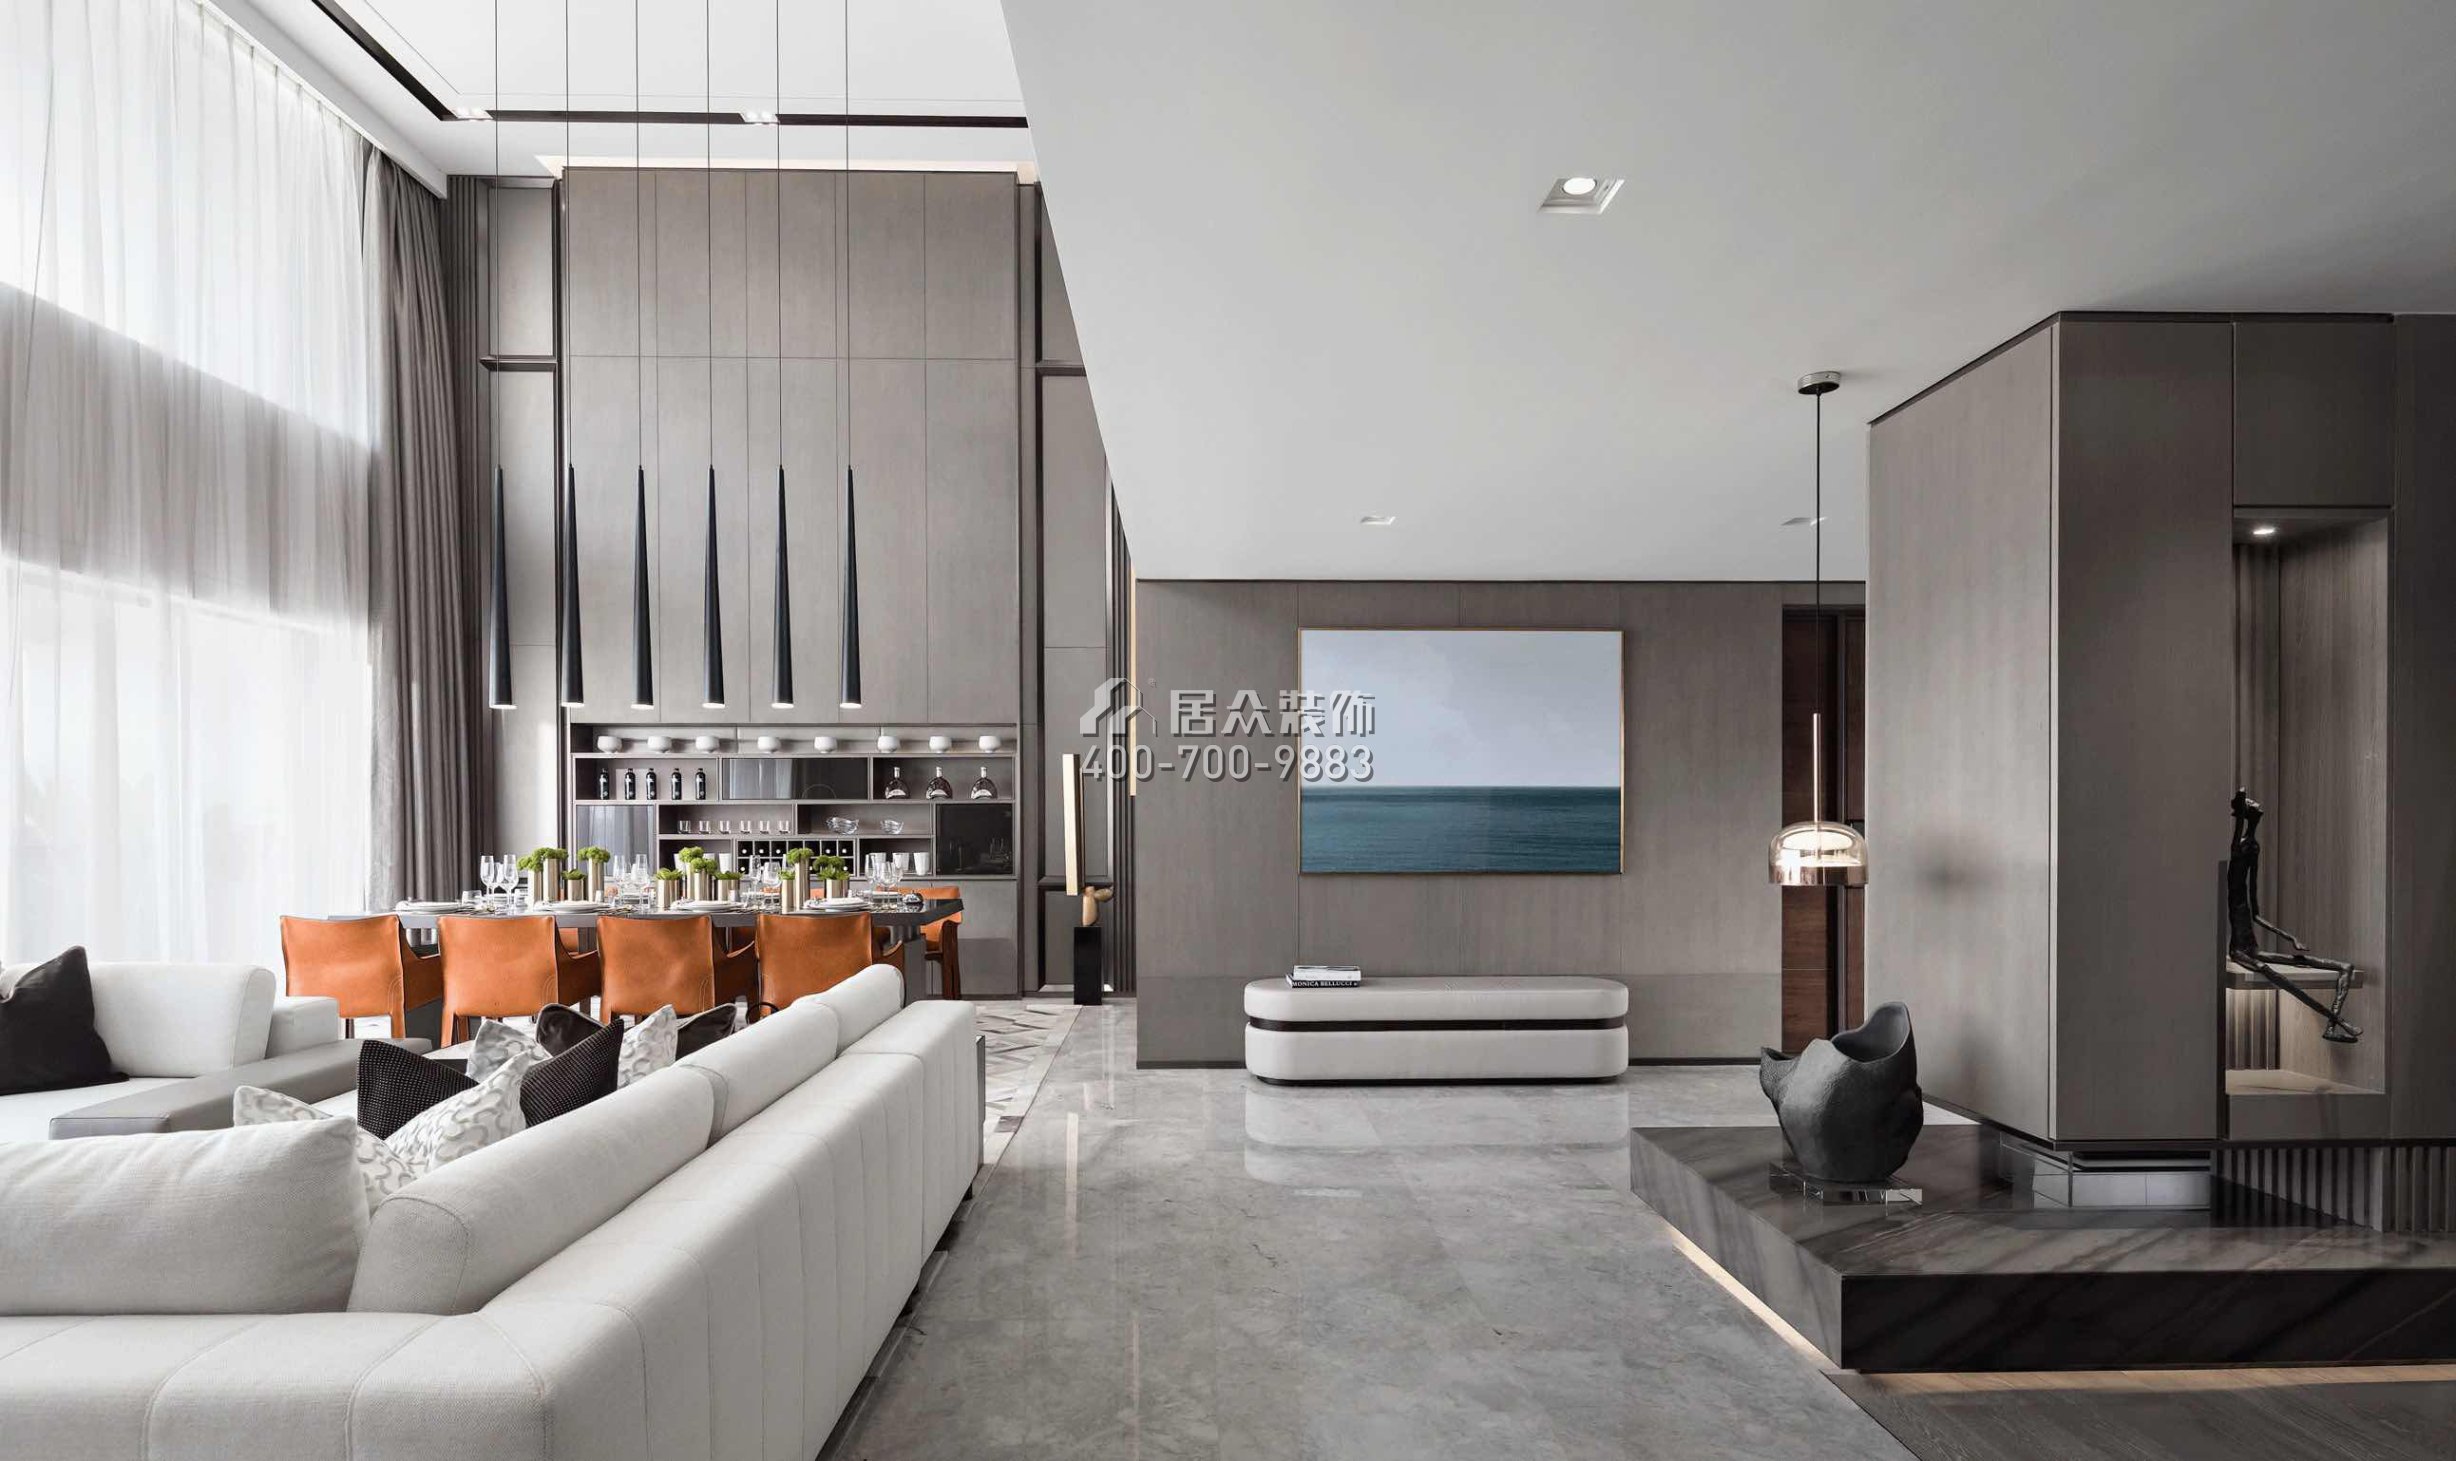 天驕御峰500平方米現代簡約風格別墅戶型客廳裝修效果圖